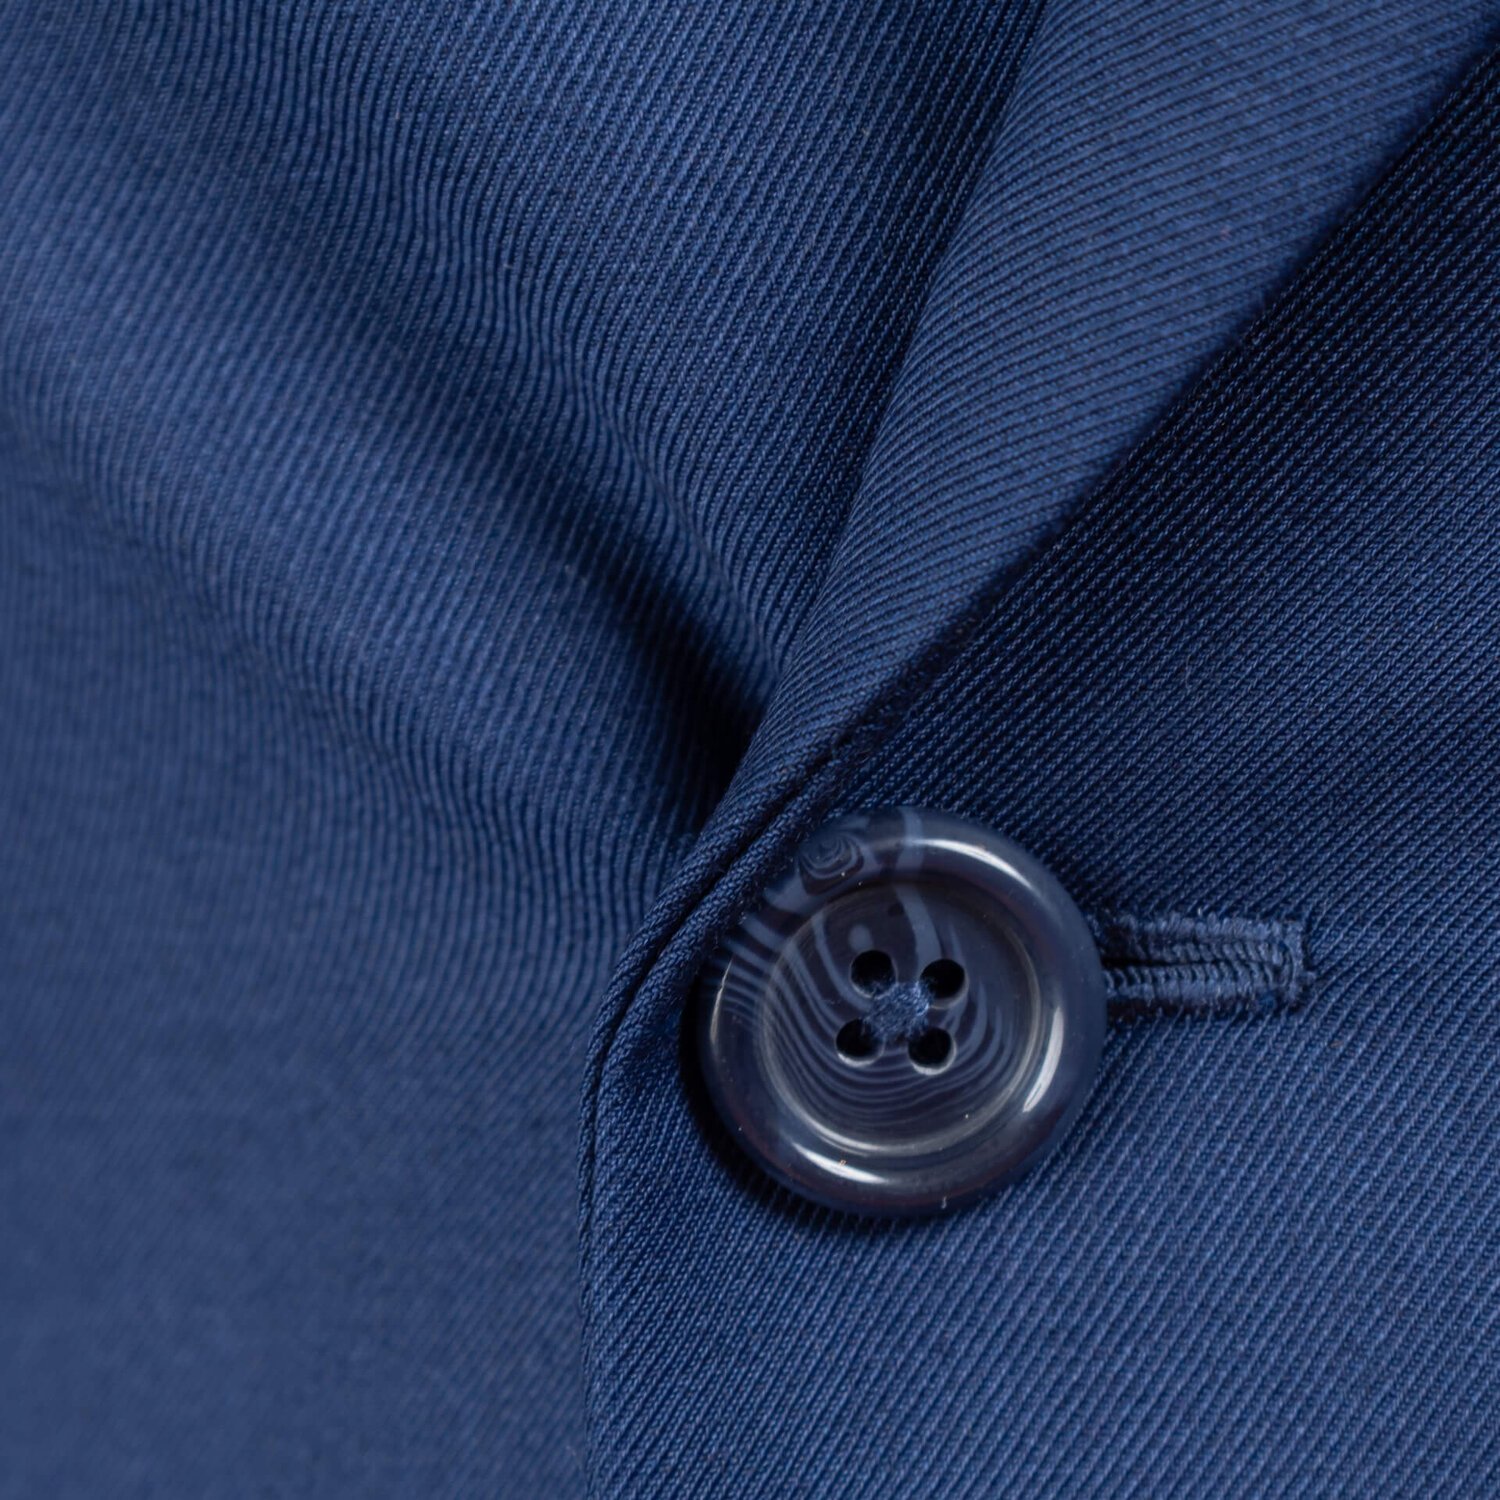 Bespoke Jacket Blazer Double Breasted 2x4 Royal Blue